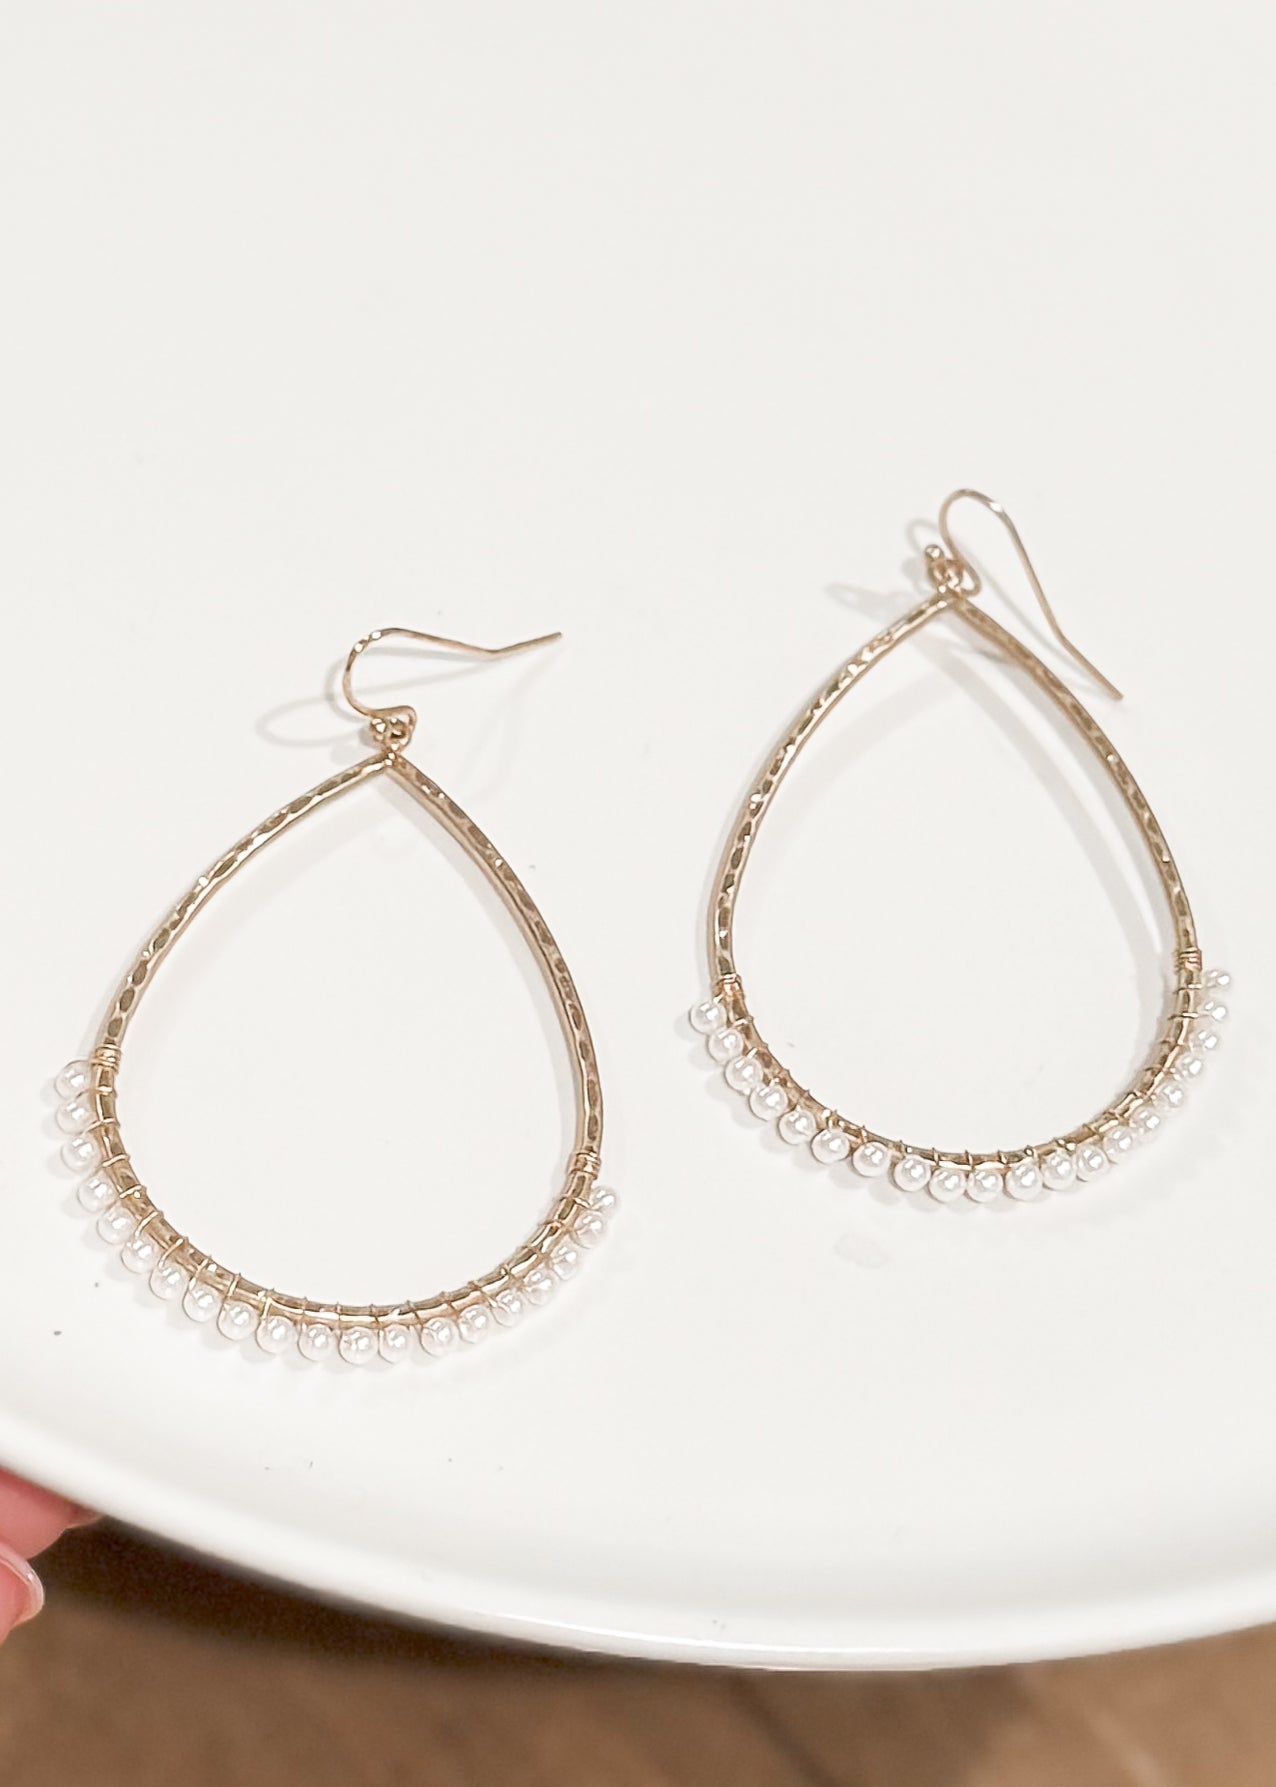 Hart Designs: Poppy Earrings